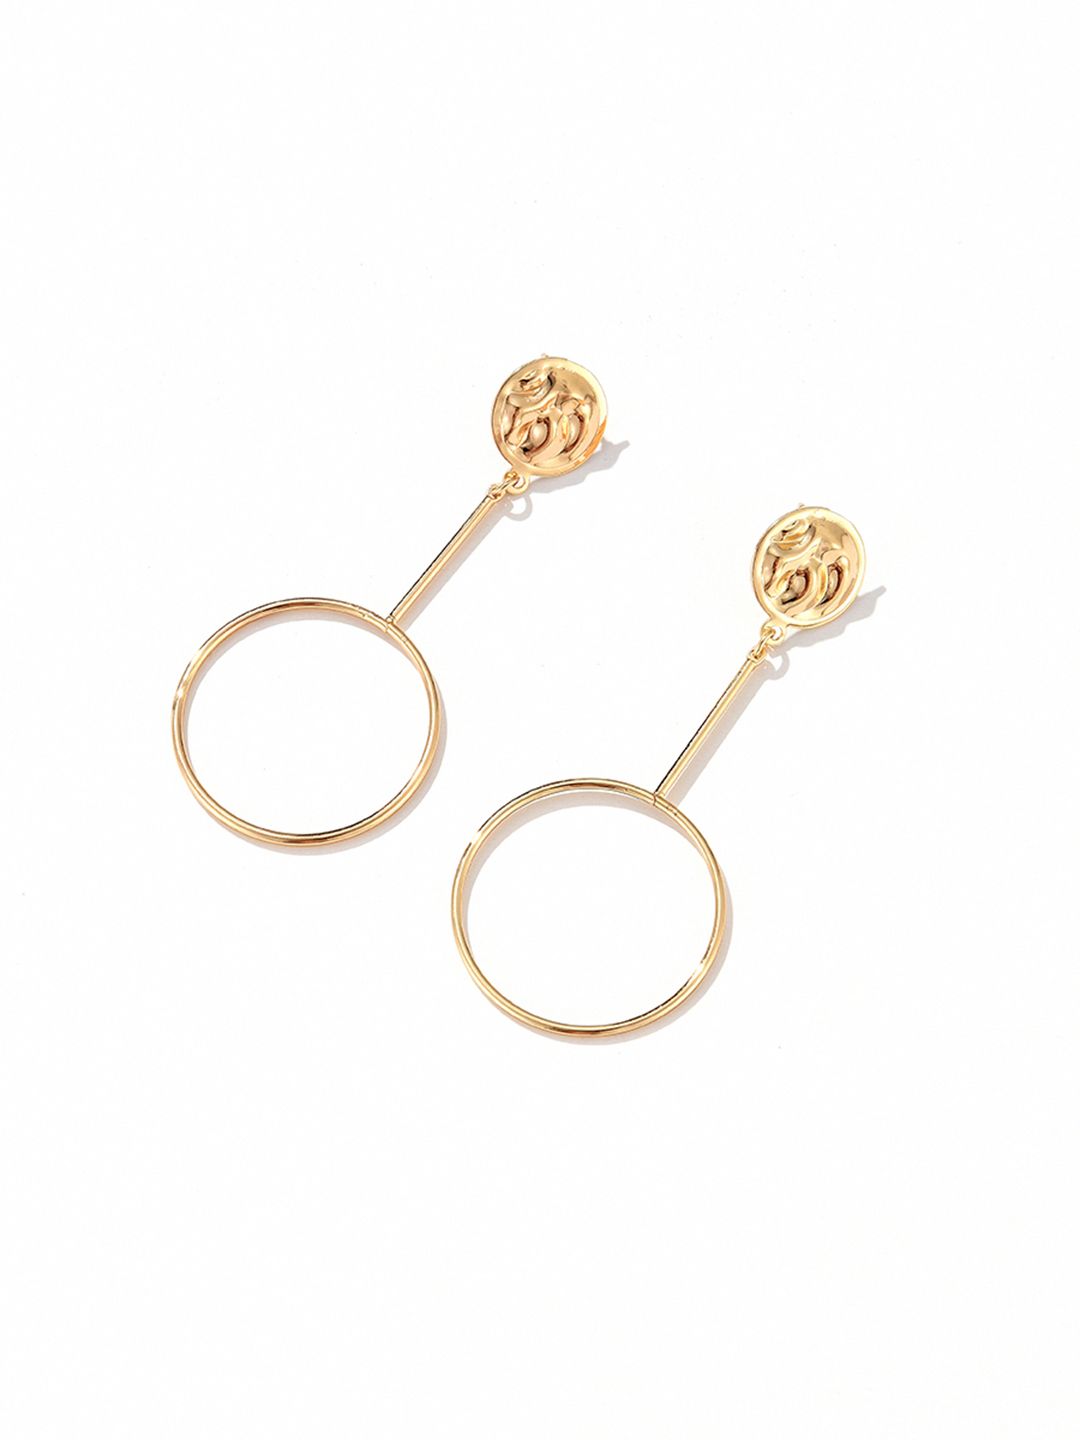 URBANIC Gold-Toned Circular Drop Earrings Price in India